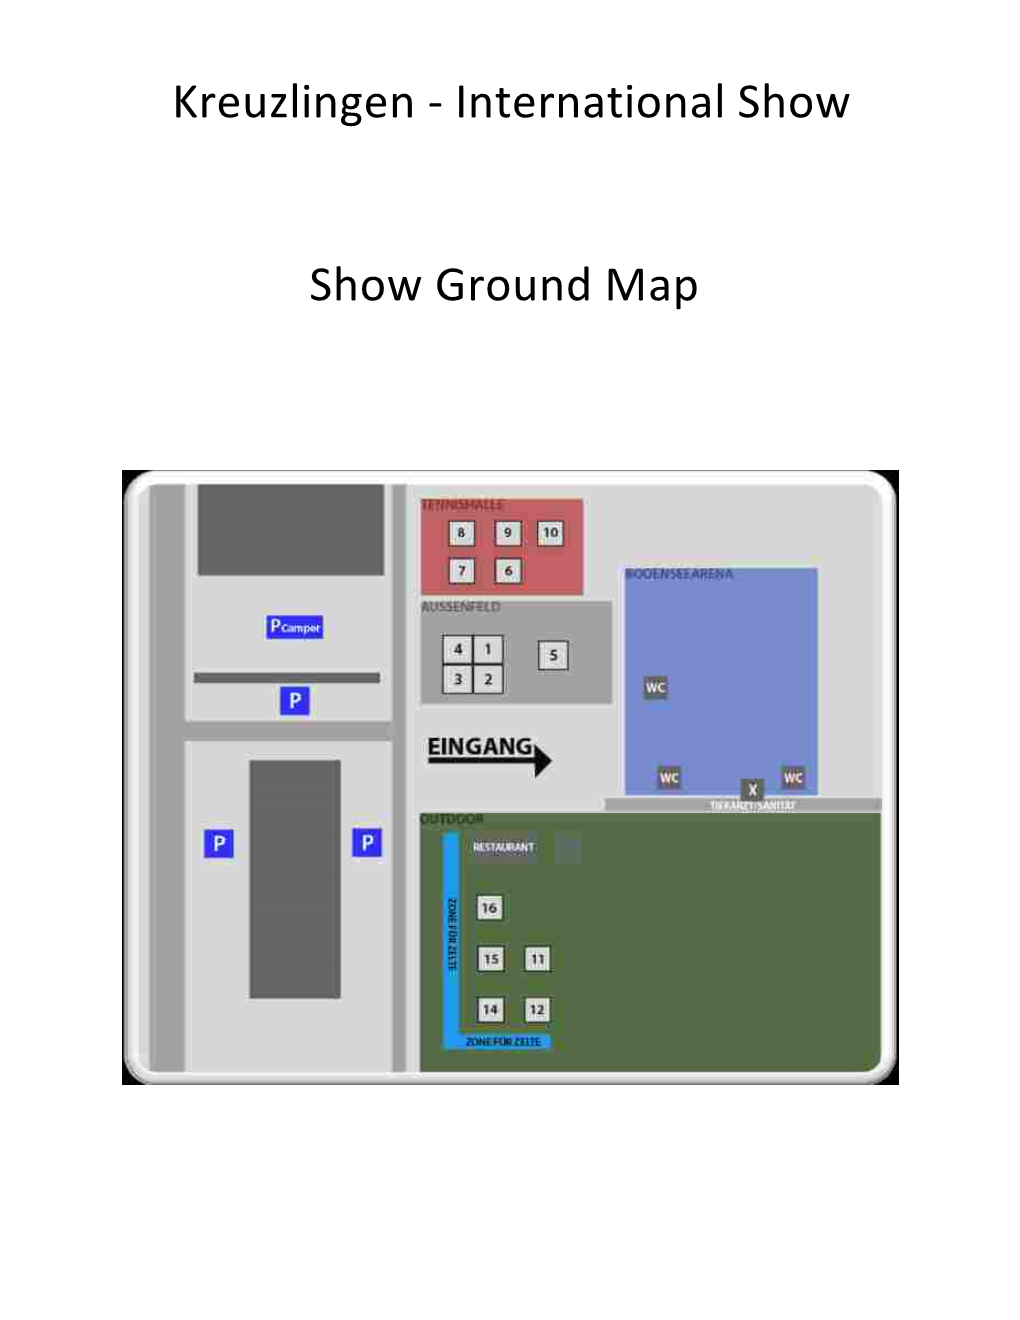 Show Ground Map Kreuzlingen